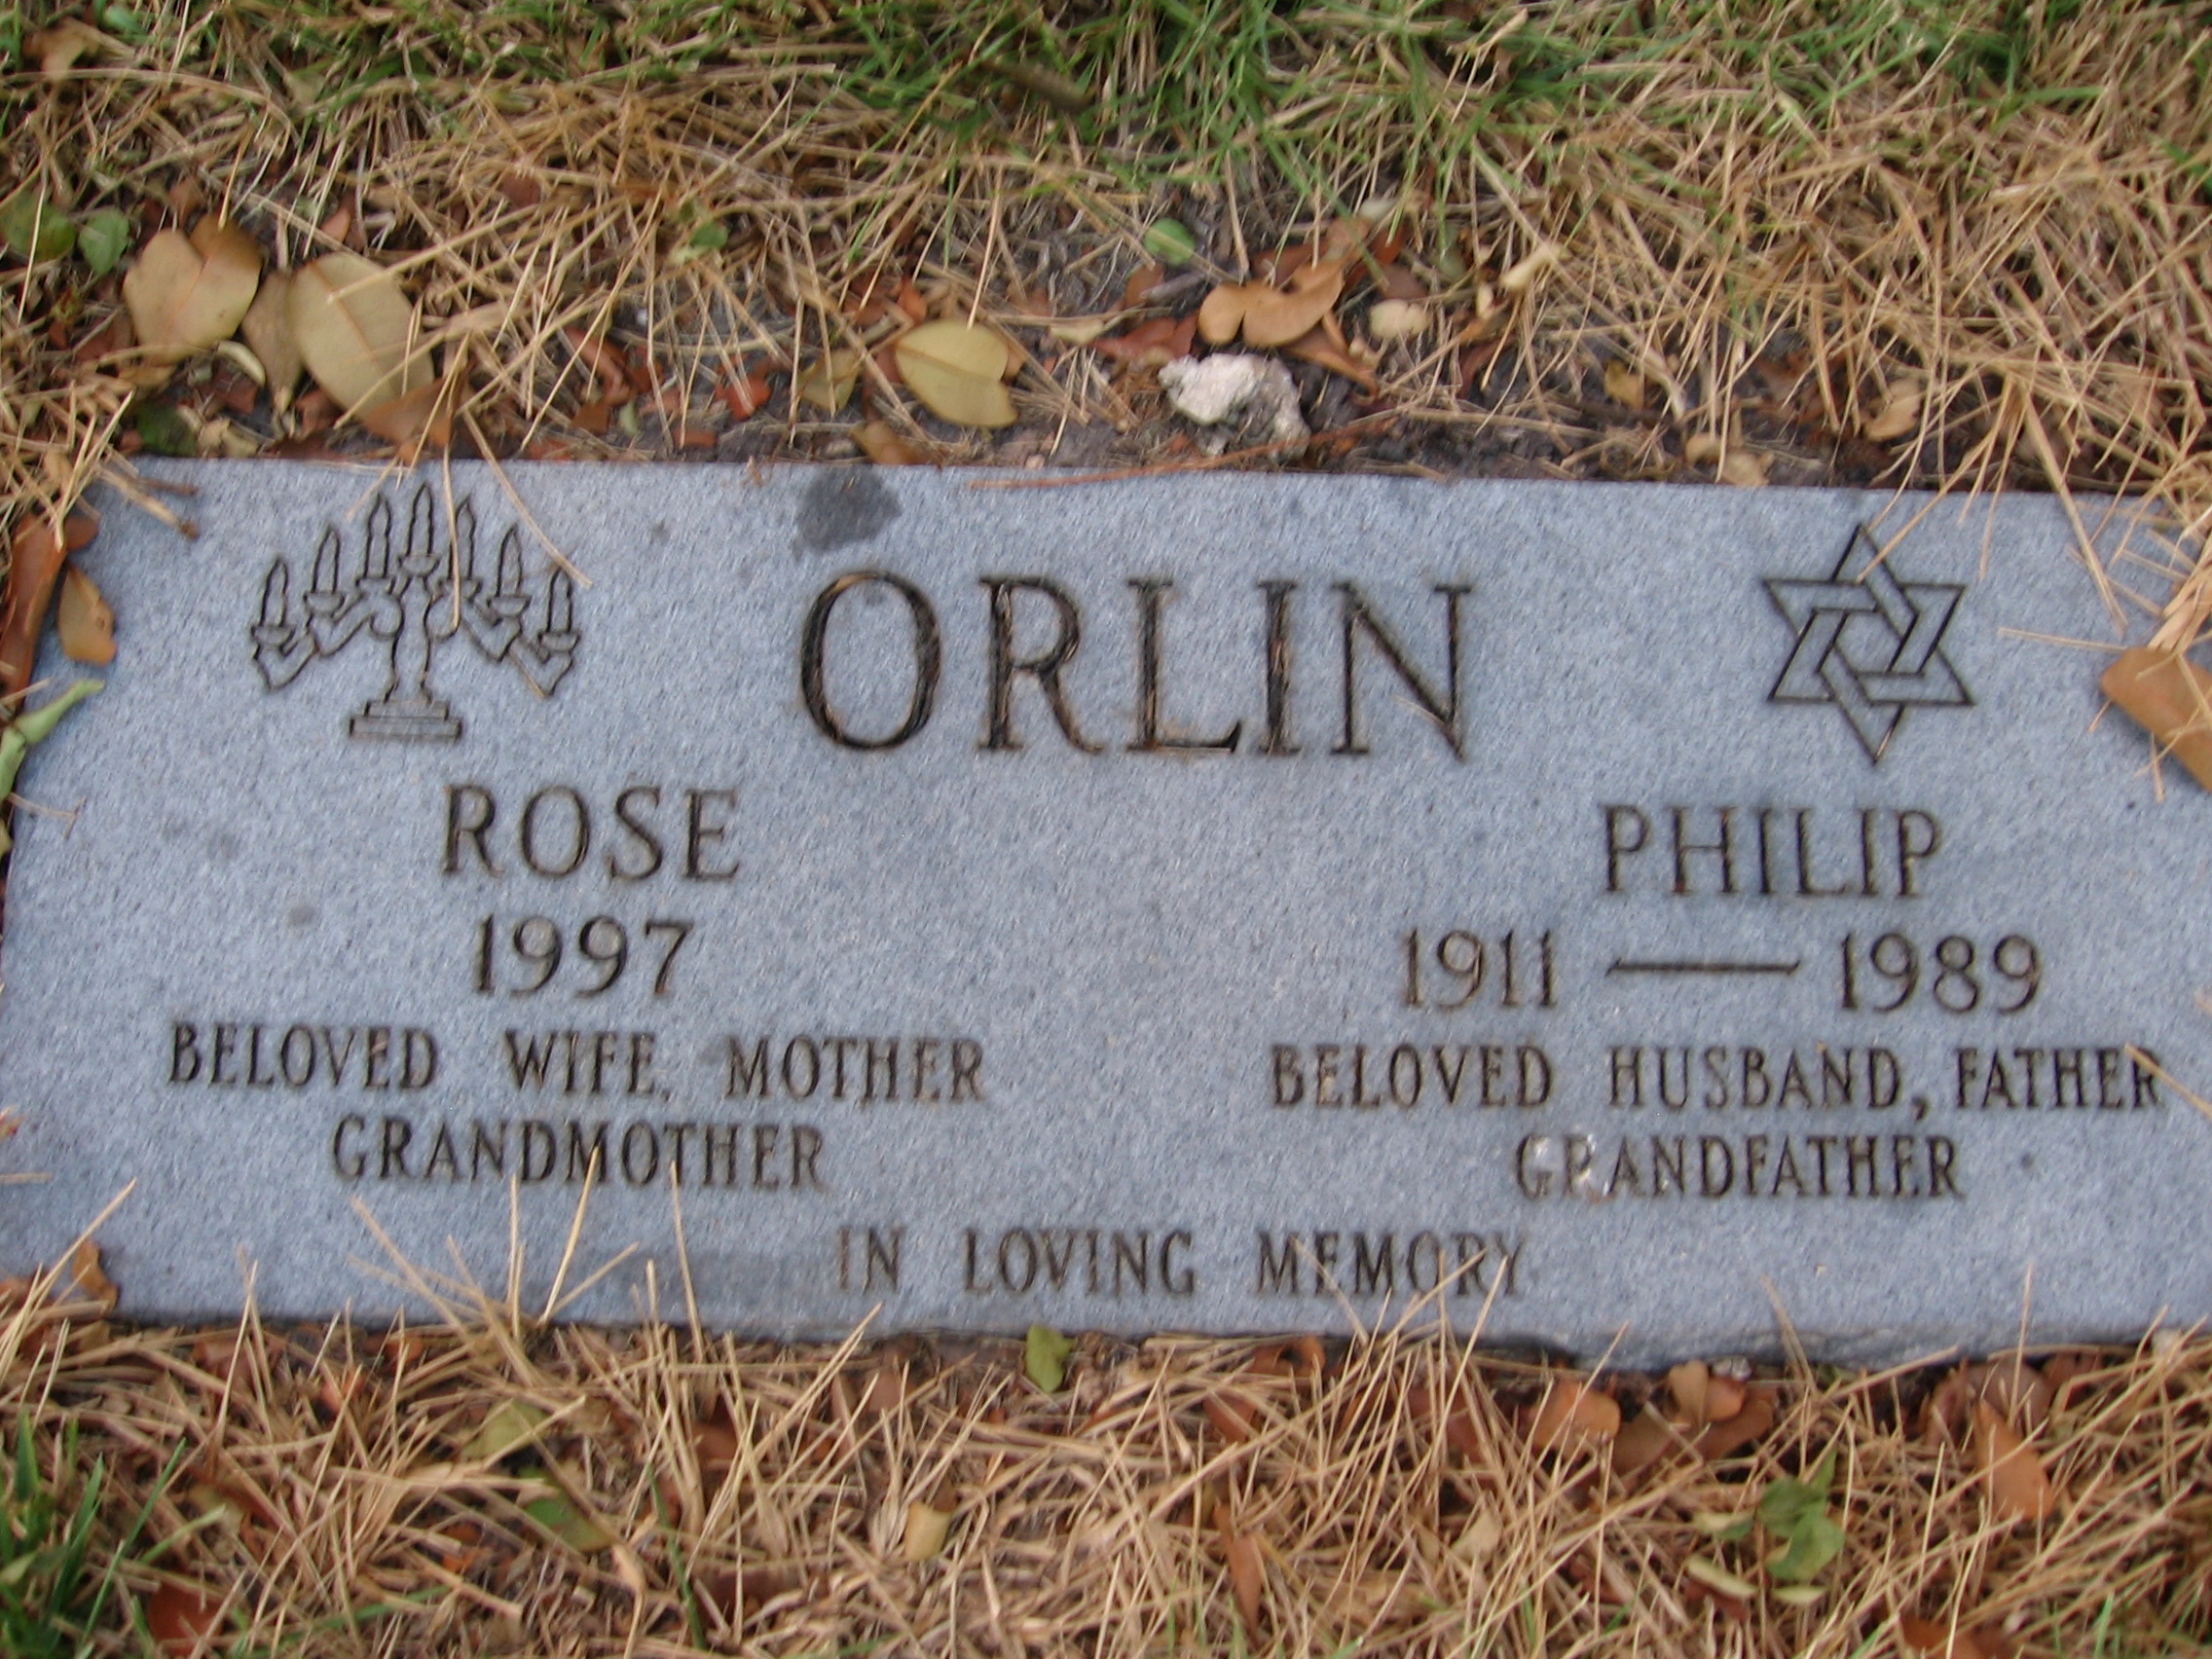 Rose Orlin